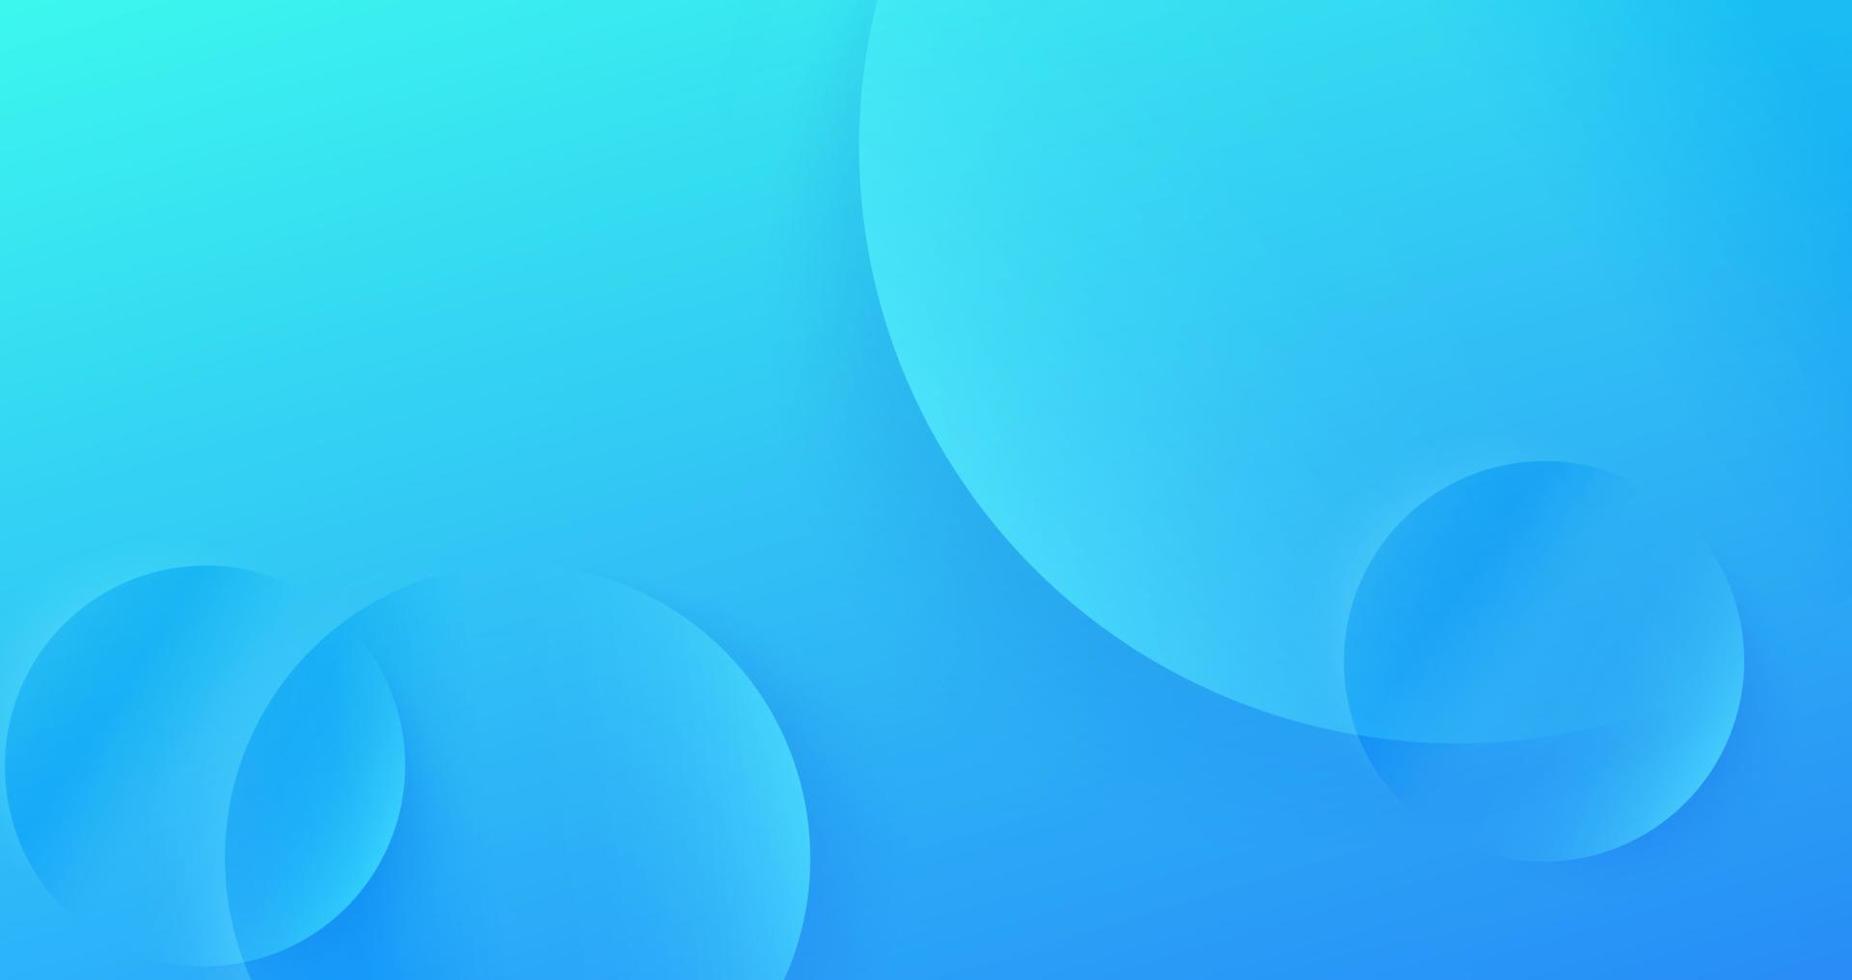 abstracte zachte blauwe achtergrond, moderne en schone banner, bestemmingspaginaconcept met pastelkleur vector